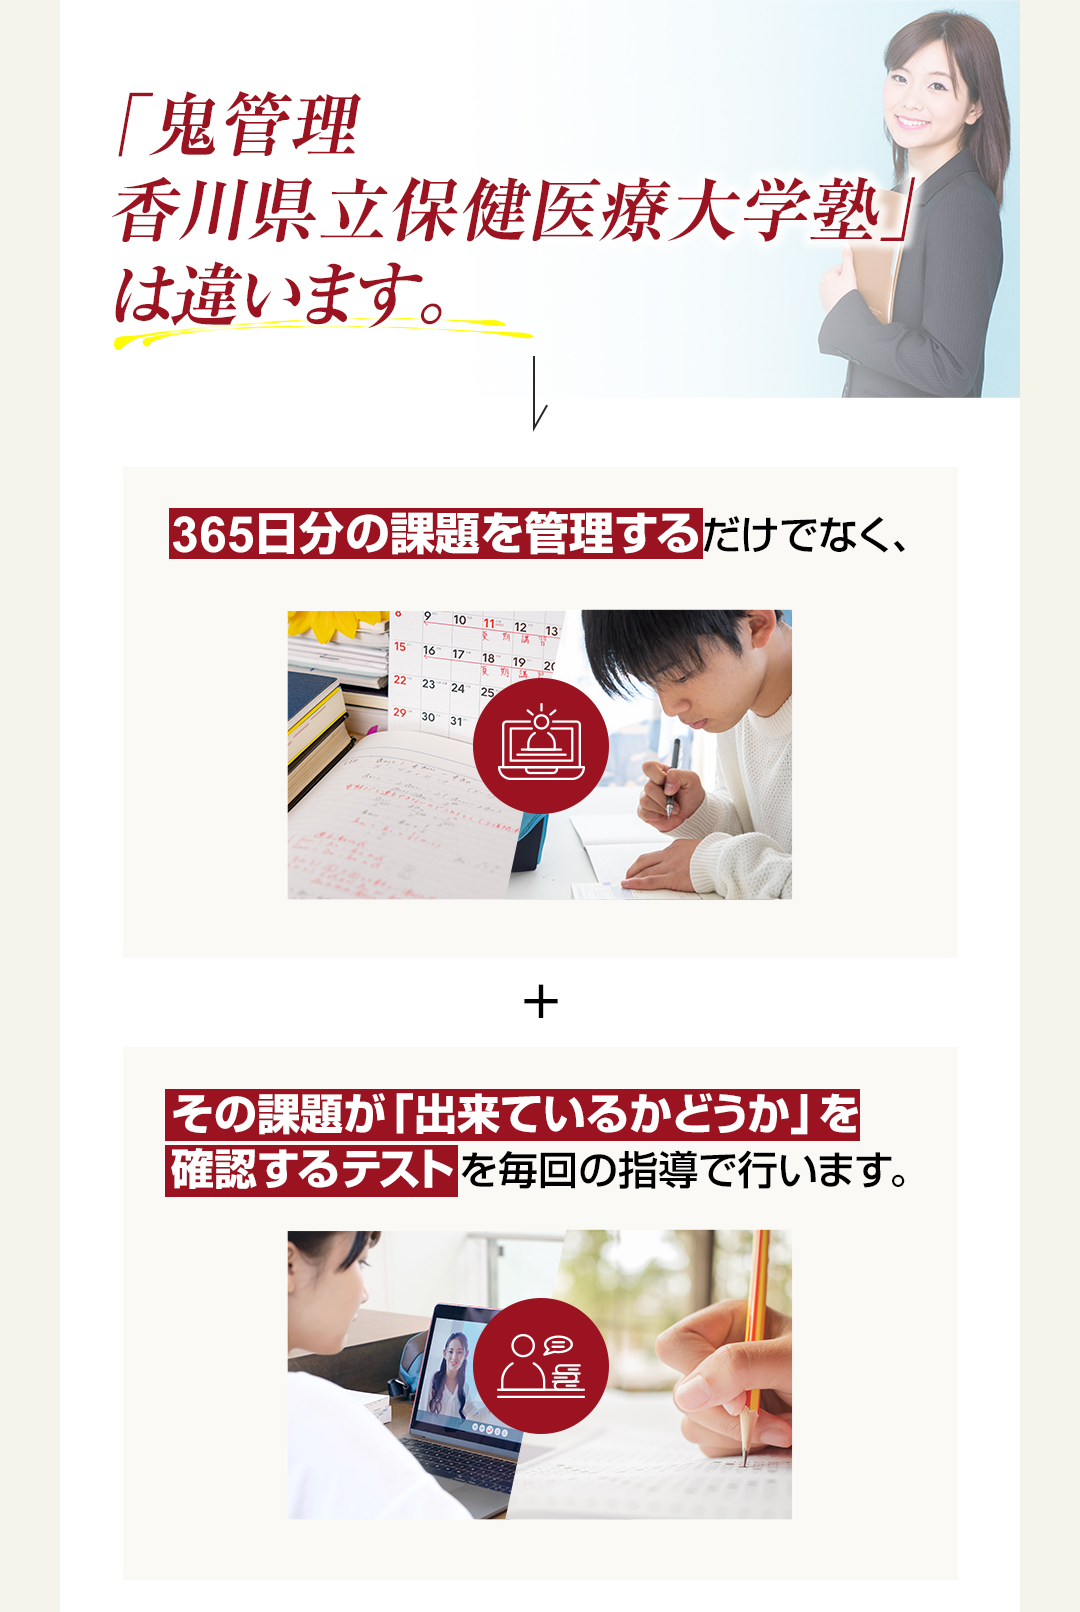 「鬼管理香川県立保健医療大学校塾」は365日分の課題を管理するだけでなくその課題ができているかどうか確認するテストを行います